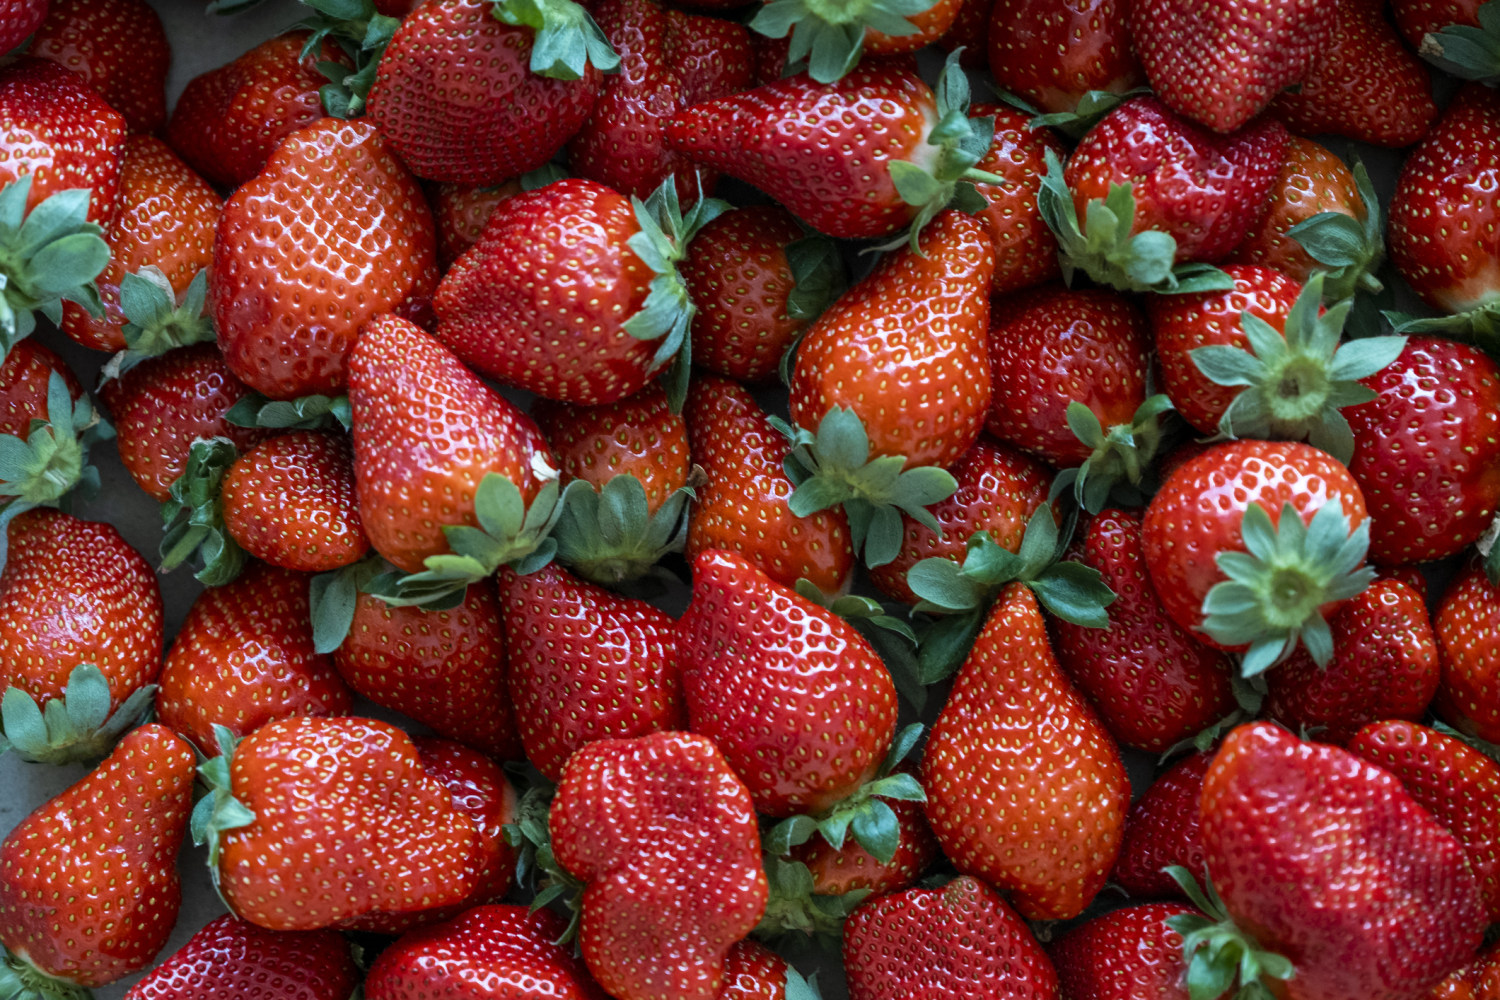 Brote de hepatitis A podría estar relacionado con fresas frescas orgánicas